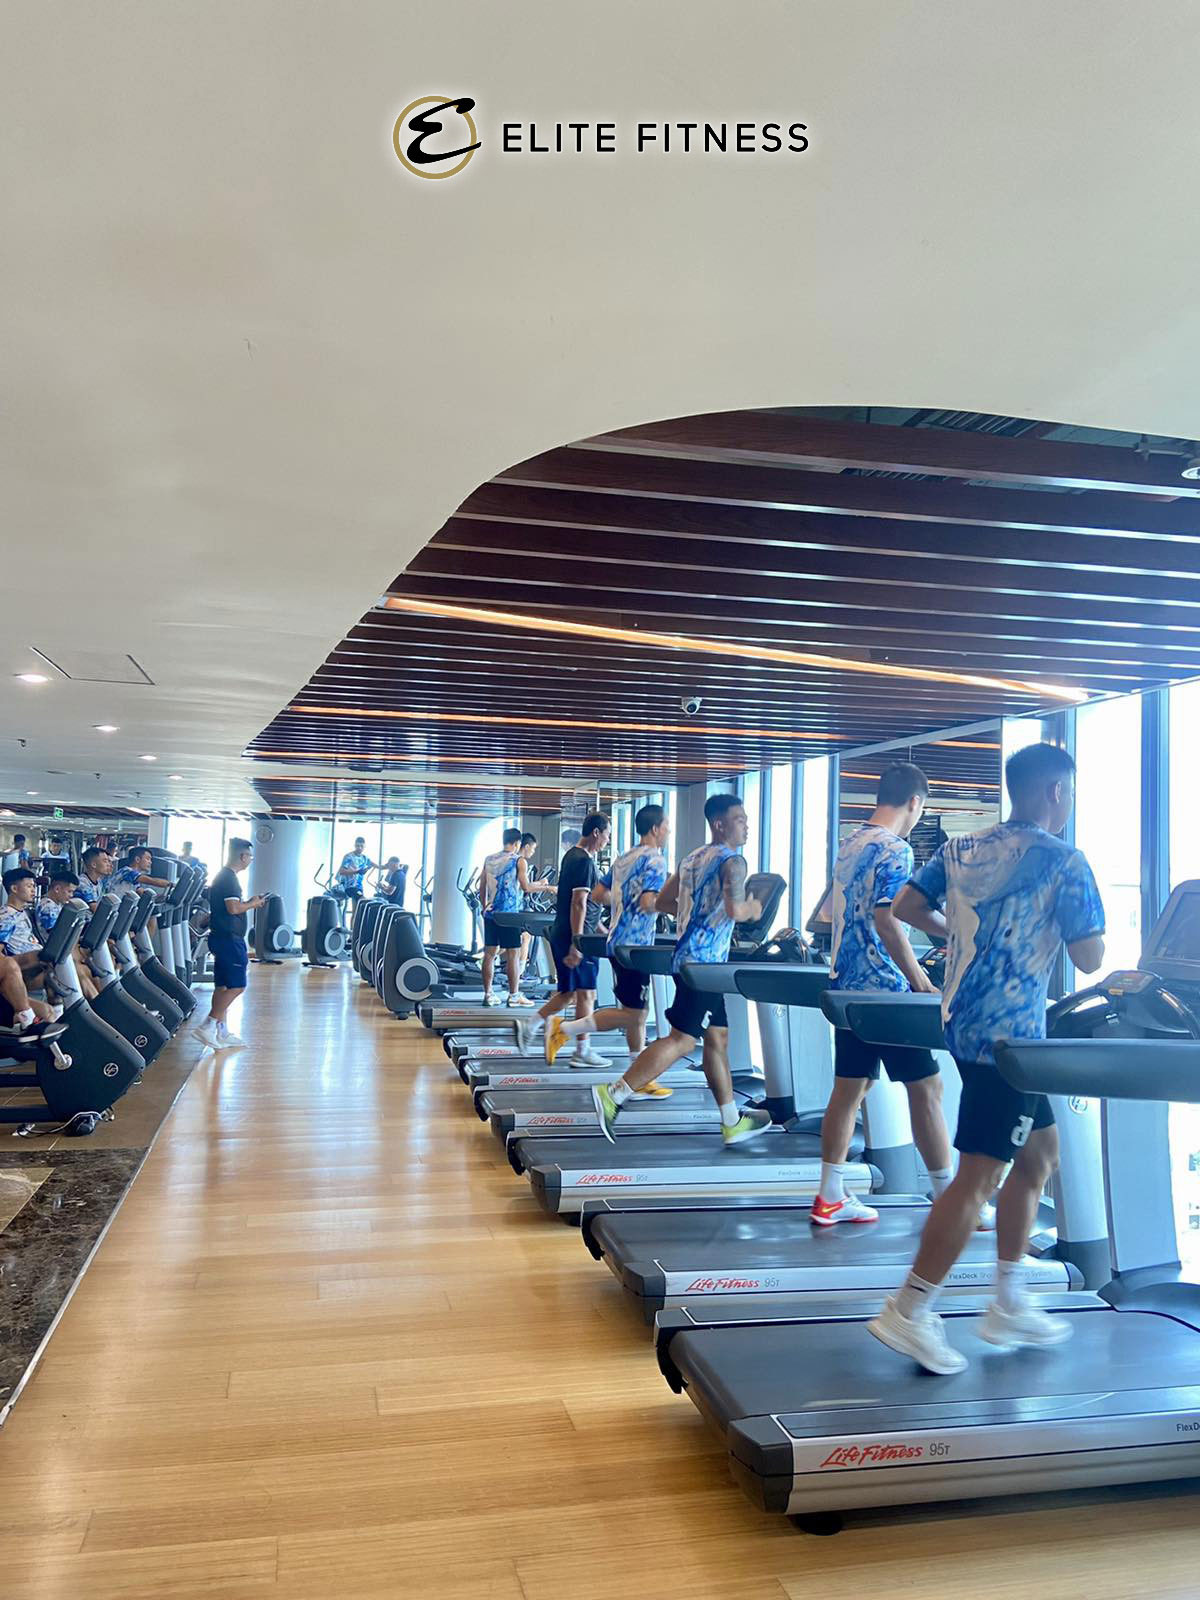 Dàn Máy chạy bộ Life Fitness cao cấp tại phòng gym Elite Fitness